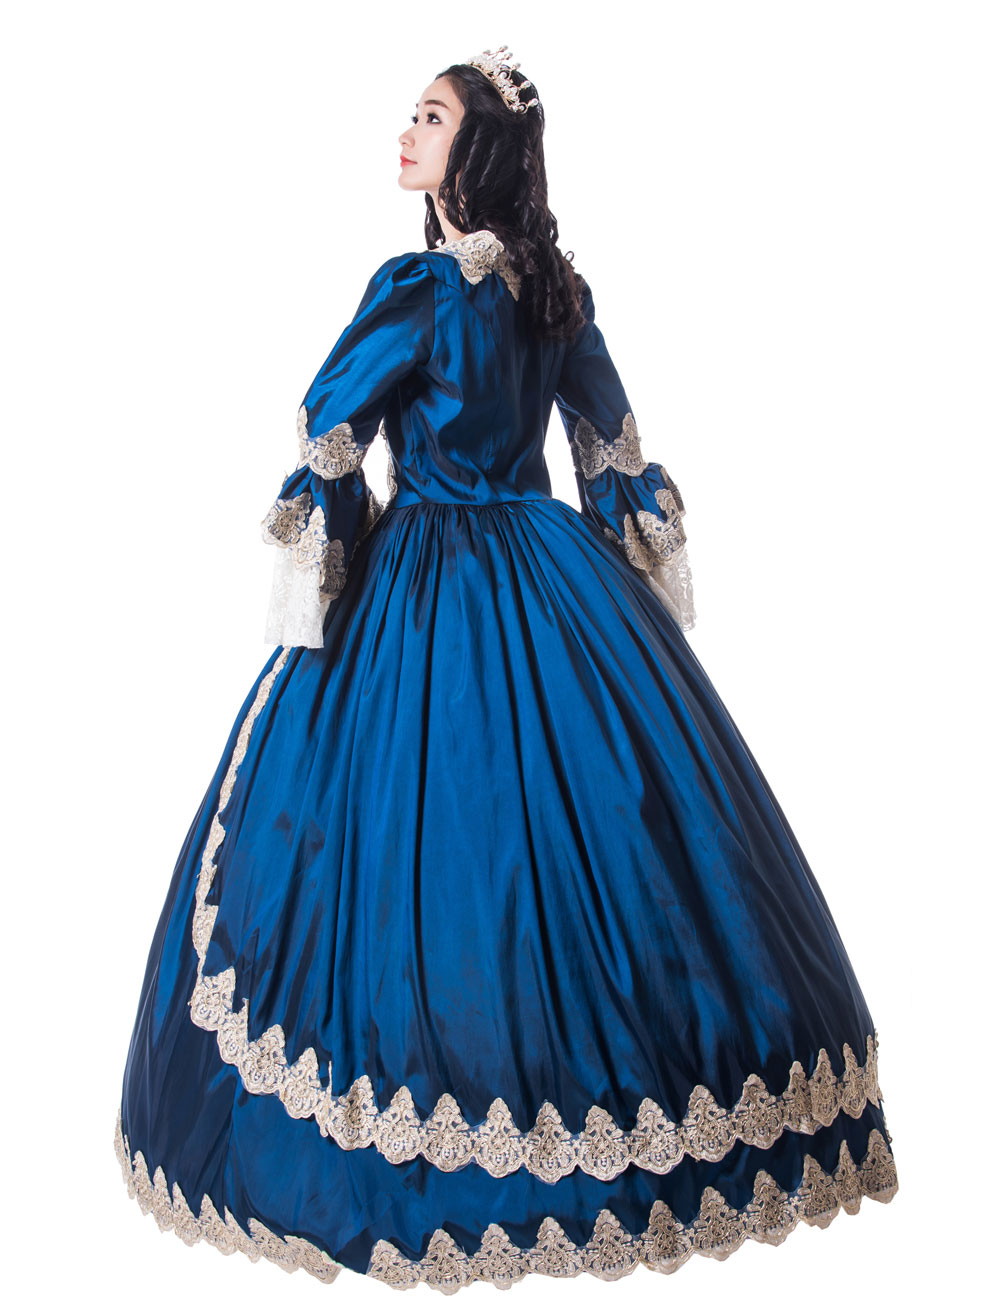 プリンセス 女性用 貴族ドレス 中世 ドレス ロイヤルブルー 長袖 マットサテン サテン マルディグラ ドレス ヴィクトリア風 中世 ドレス